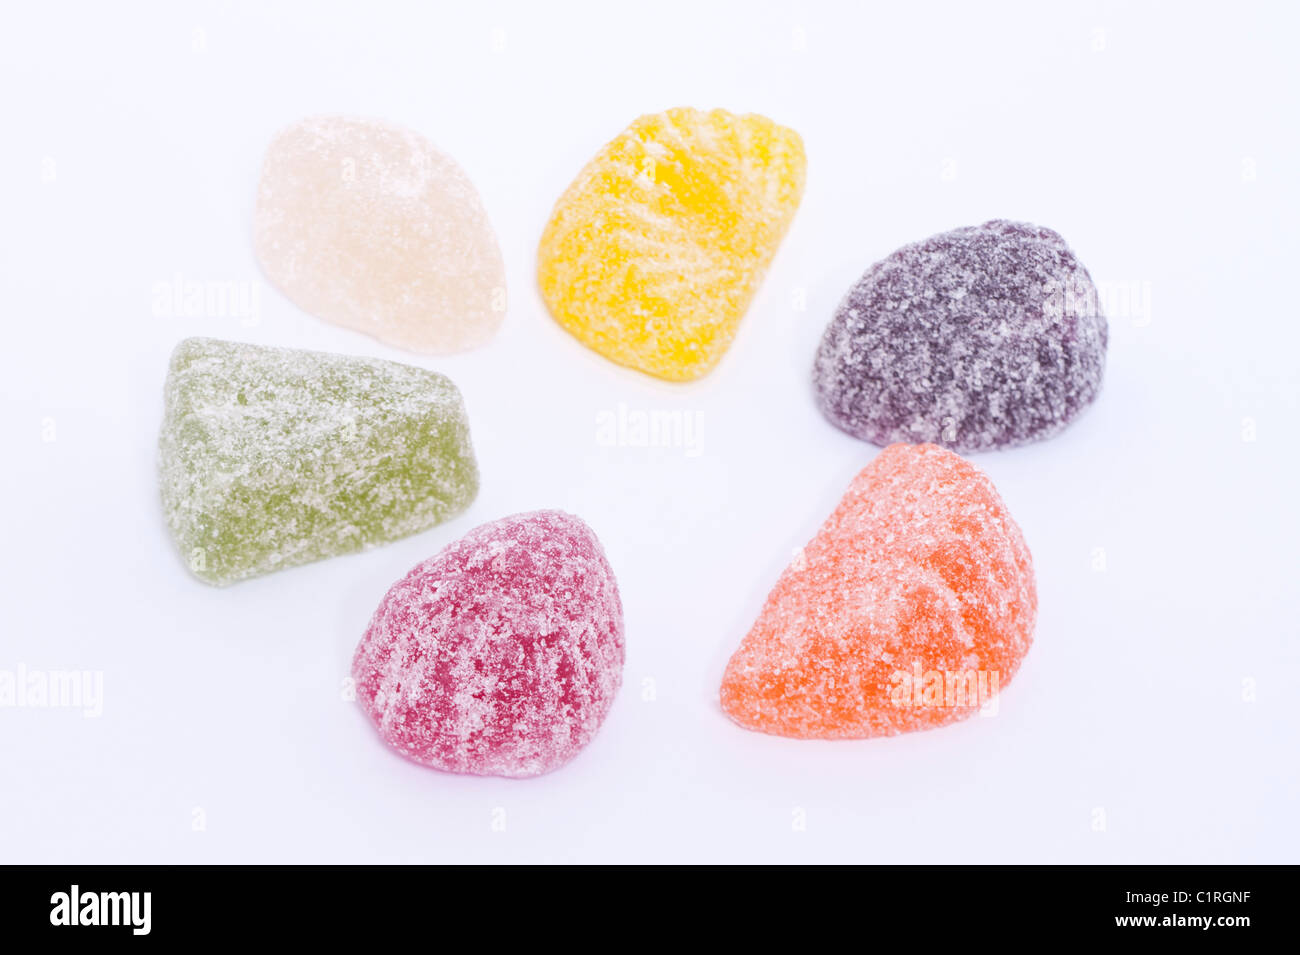 Eine Auswahl der gezuckerte Gelee Früchte Pastillen traditionellen Süßigkeiten auf weißem Hintergrund Stockfoto